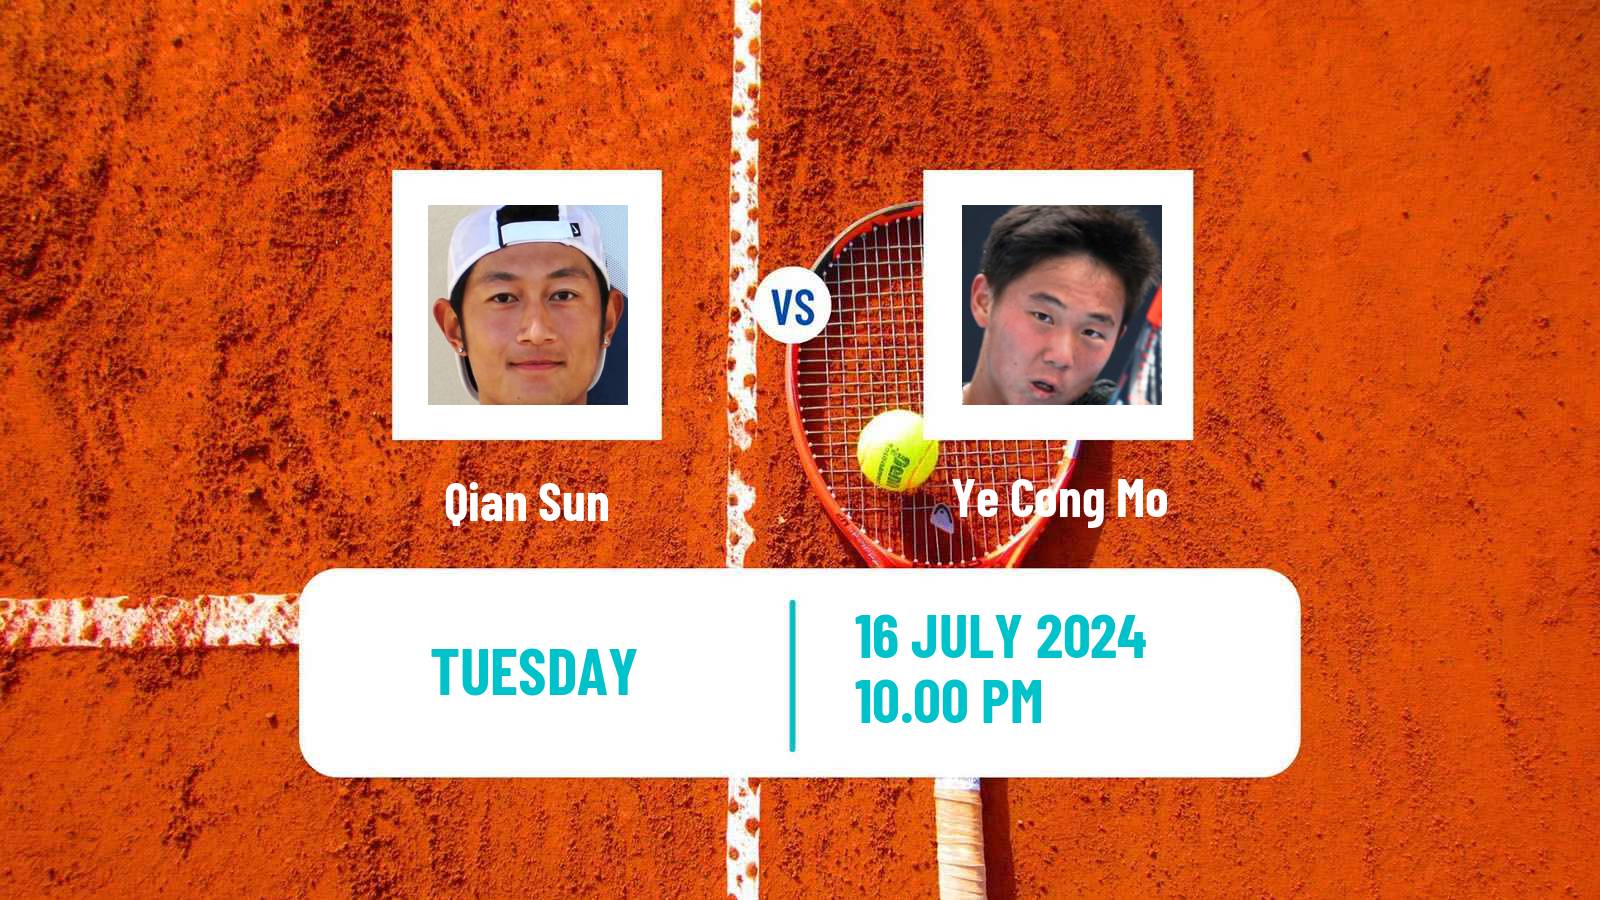 Tennis ITF M25 Tianjin 2 Men Qian Sun - Ye Cong Mo